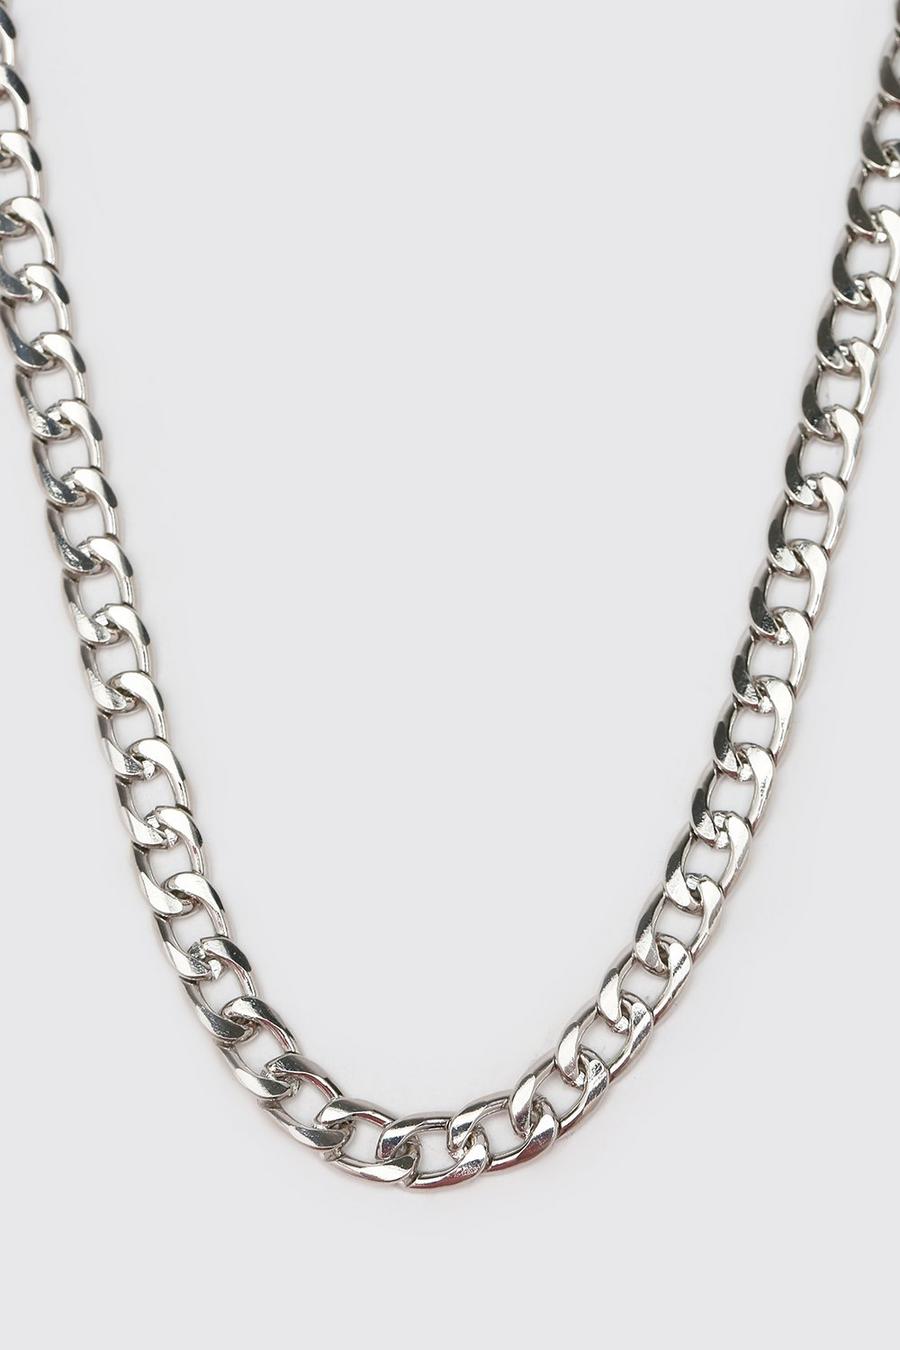 Silver argent Short Length Plain Chain Necklace